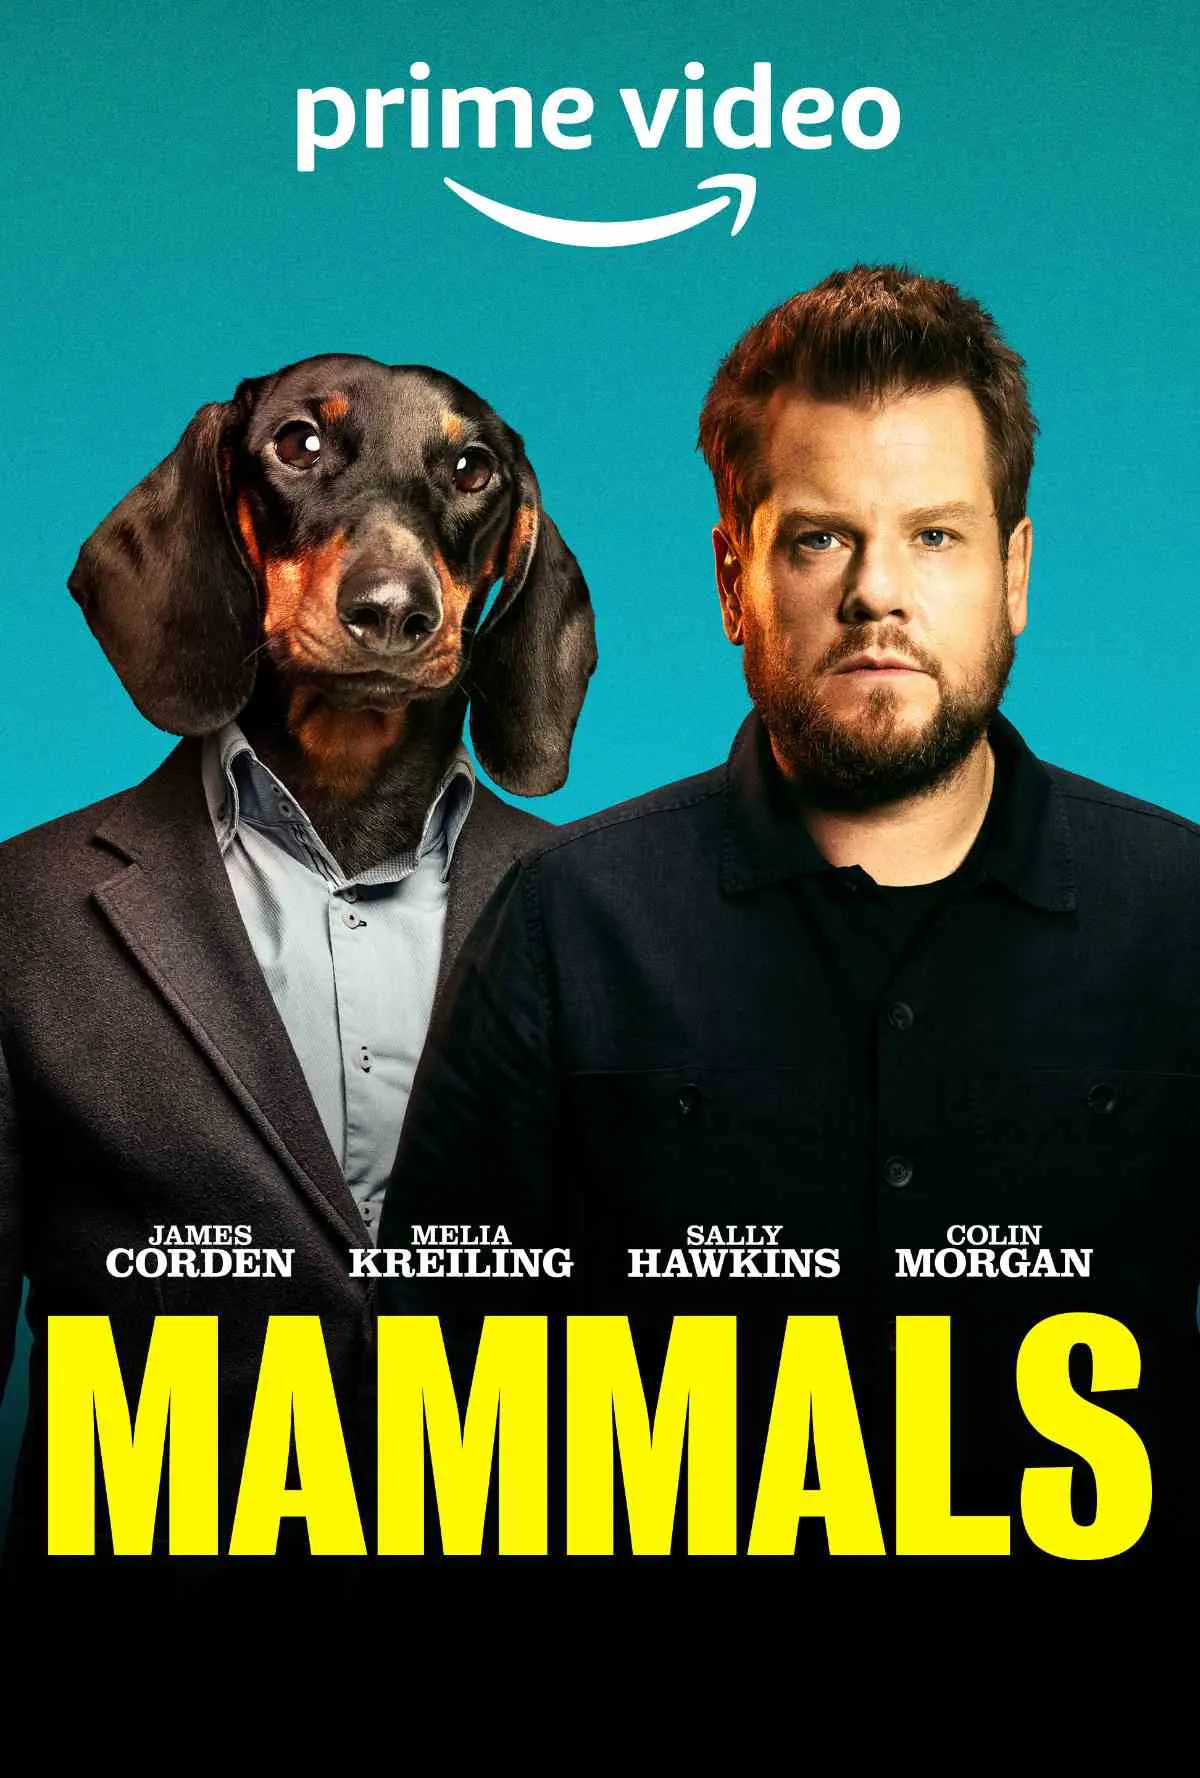 Mammals Trailer